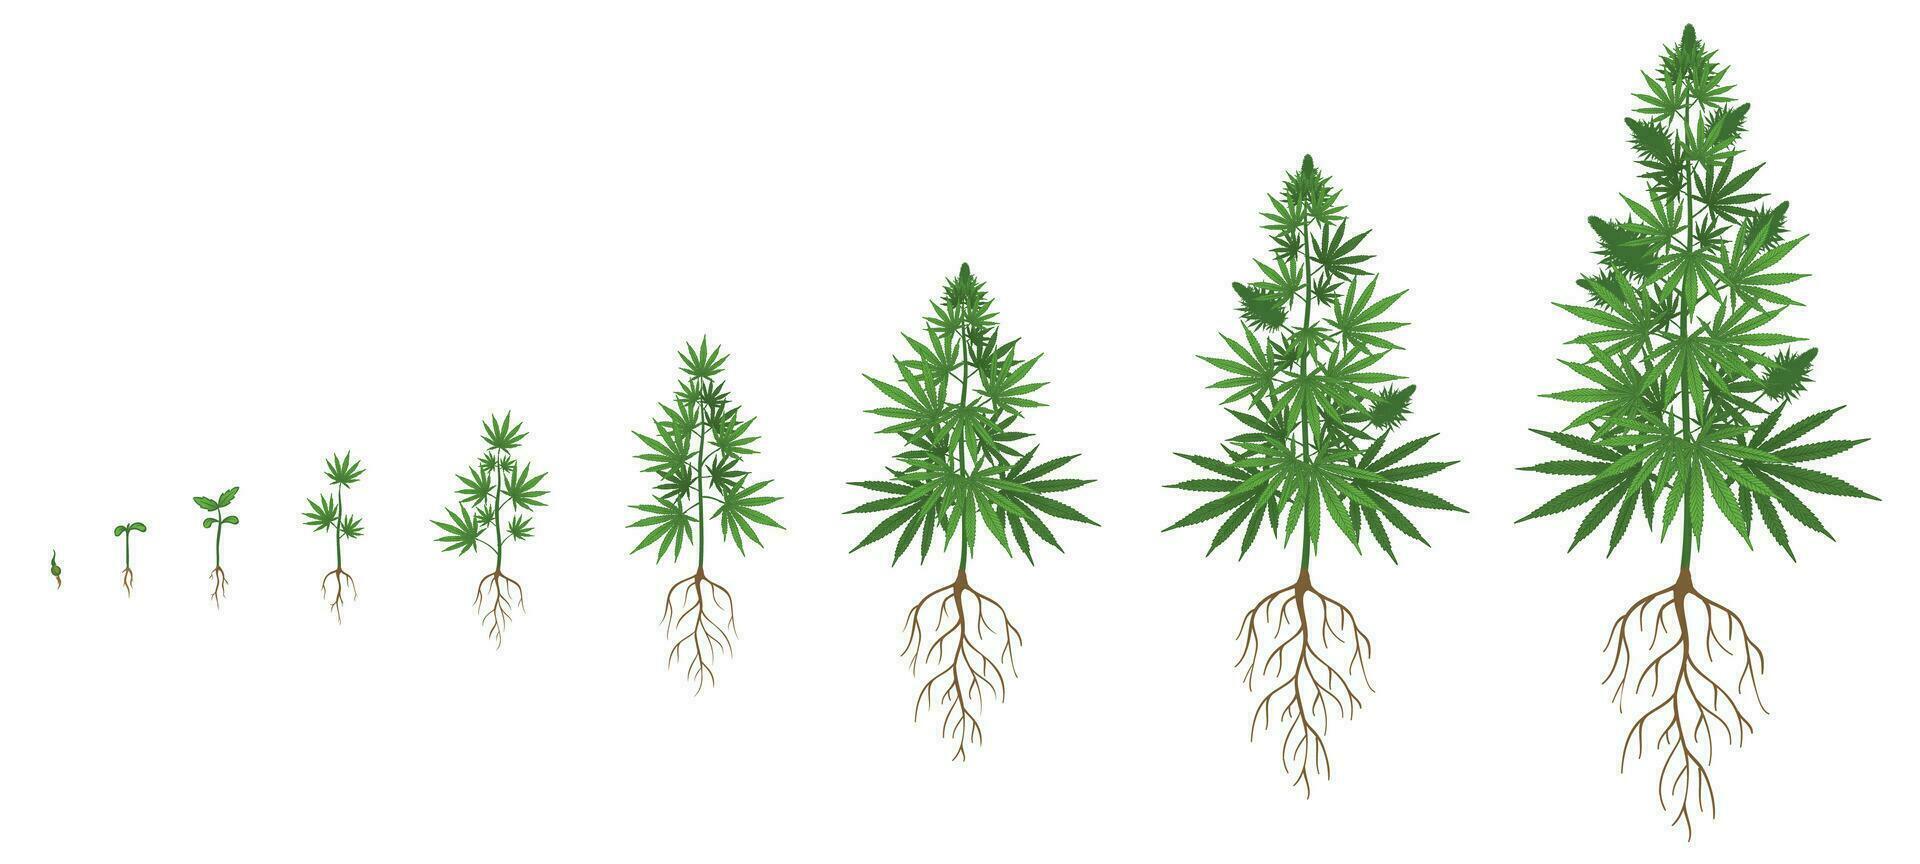 chanvre plante croissance cycle. cannabis cultivation, plantation marijuana des graines et chanvre les plantes étapes de croissance vecteur illustration